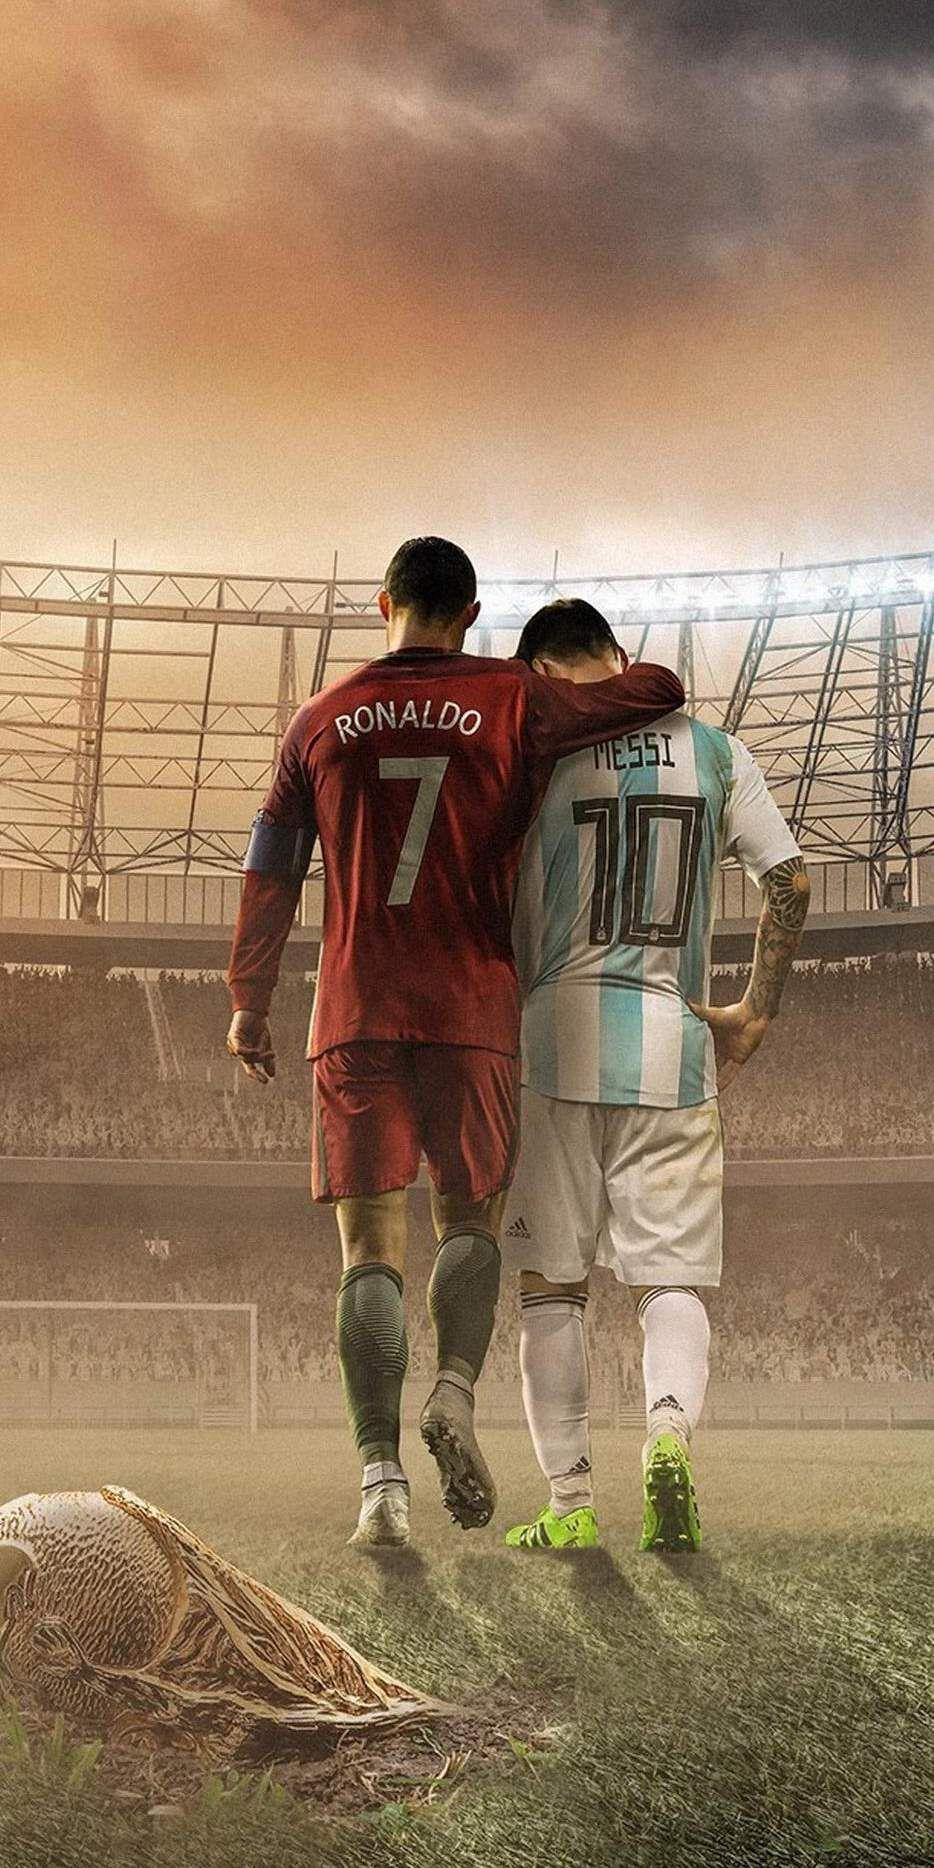 Messi vs Ronaldo: Hãy xem hình ảnh này để thấy sự so sánh thú vị giữa hai ngôi sao bóng đá nổi tiếng nhất thế giới - Messi và Ronaldo. Bạn sẽ được thấy những tình huống bóng đá kịch tính và đầy quyết định của cả hai cầu thủ, và tận hưởng cảm giác không thể nào quên khi xem hình ảnh này.